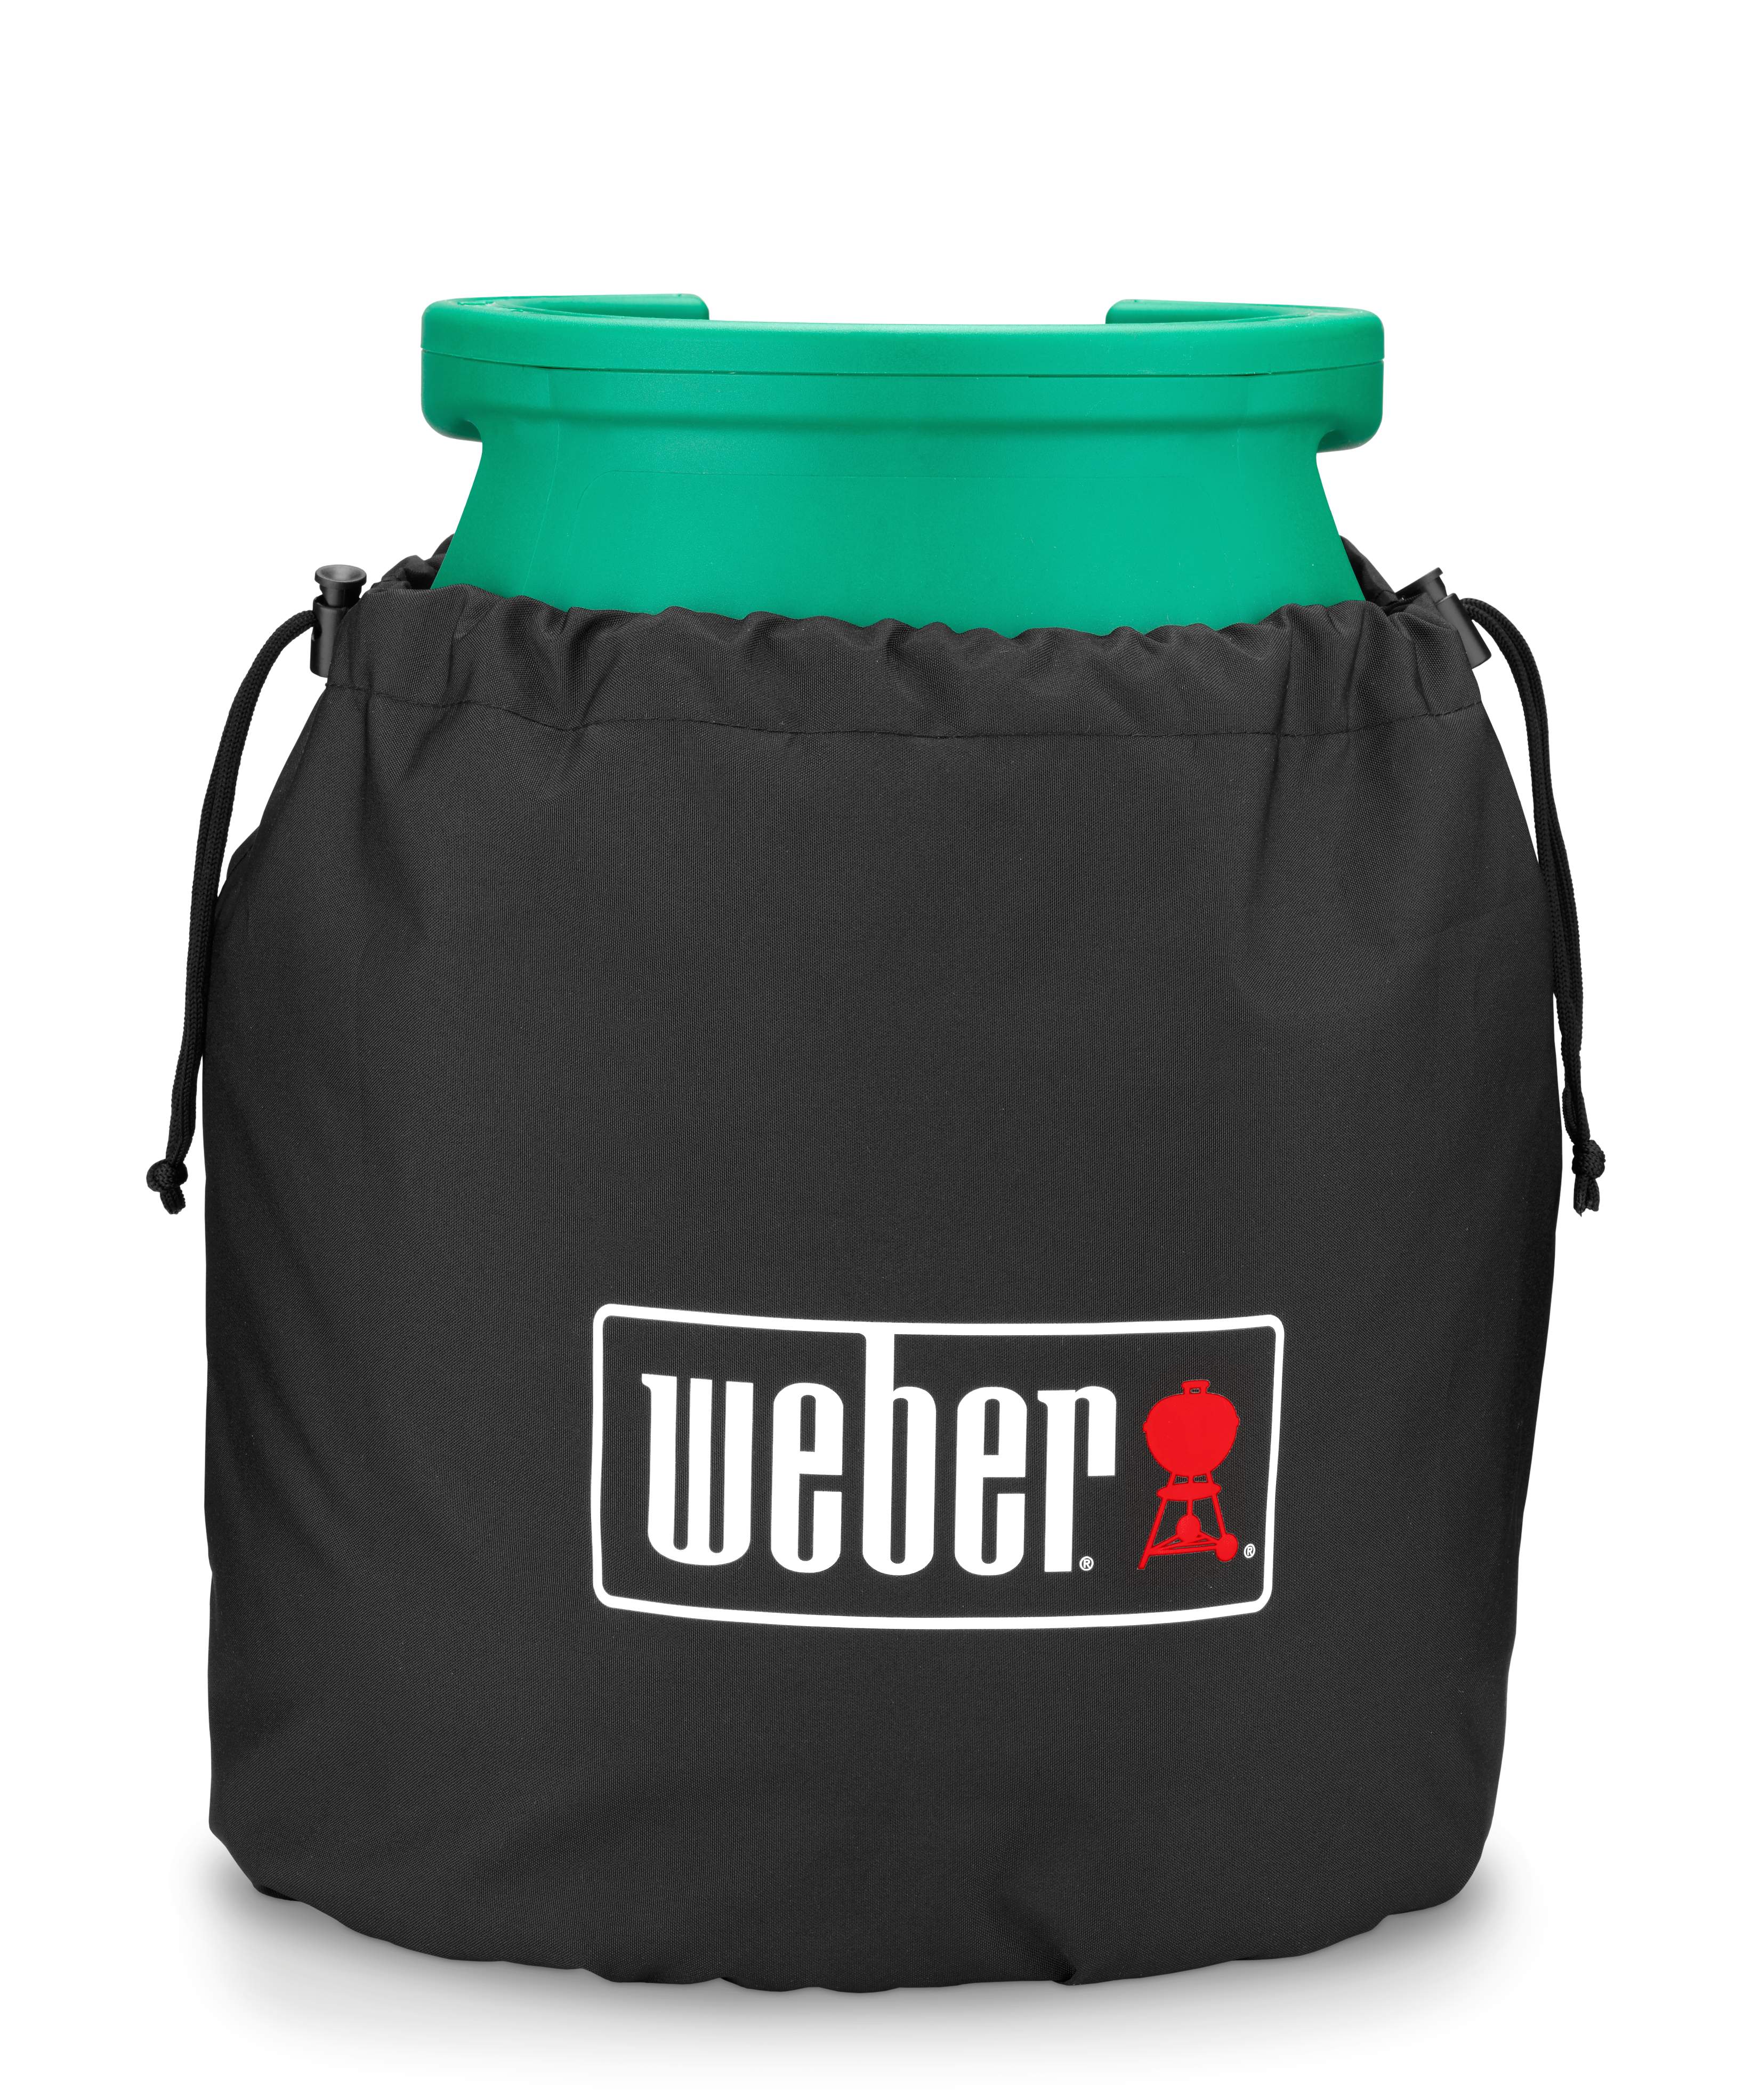 Weber Gasflaschenschutzhülle, 5 kg